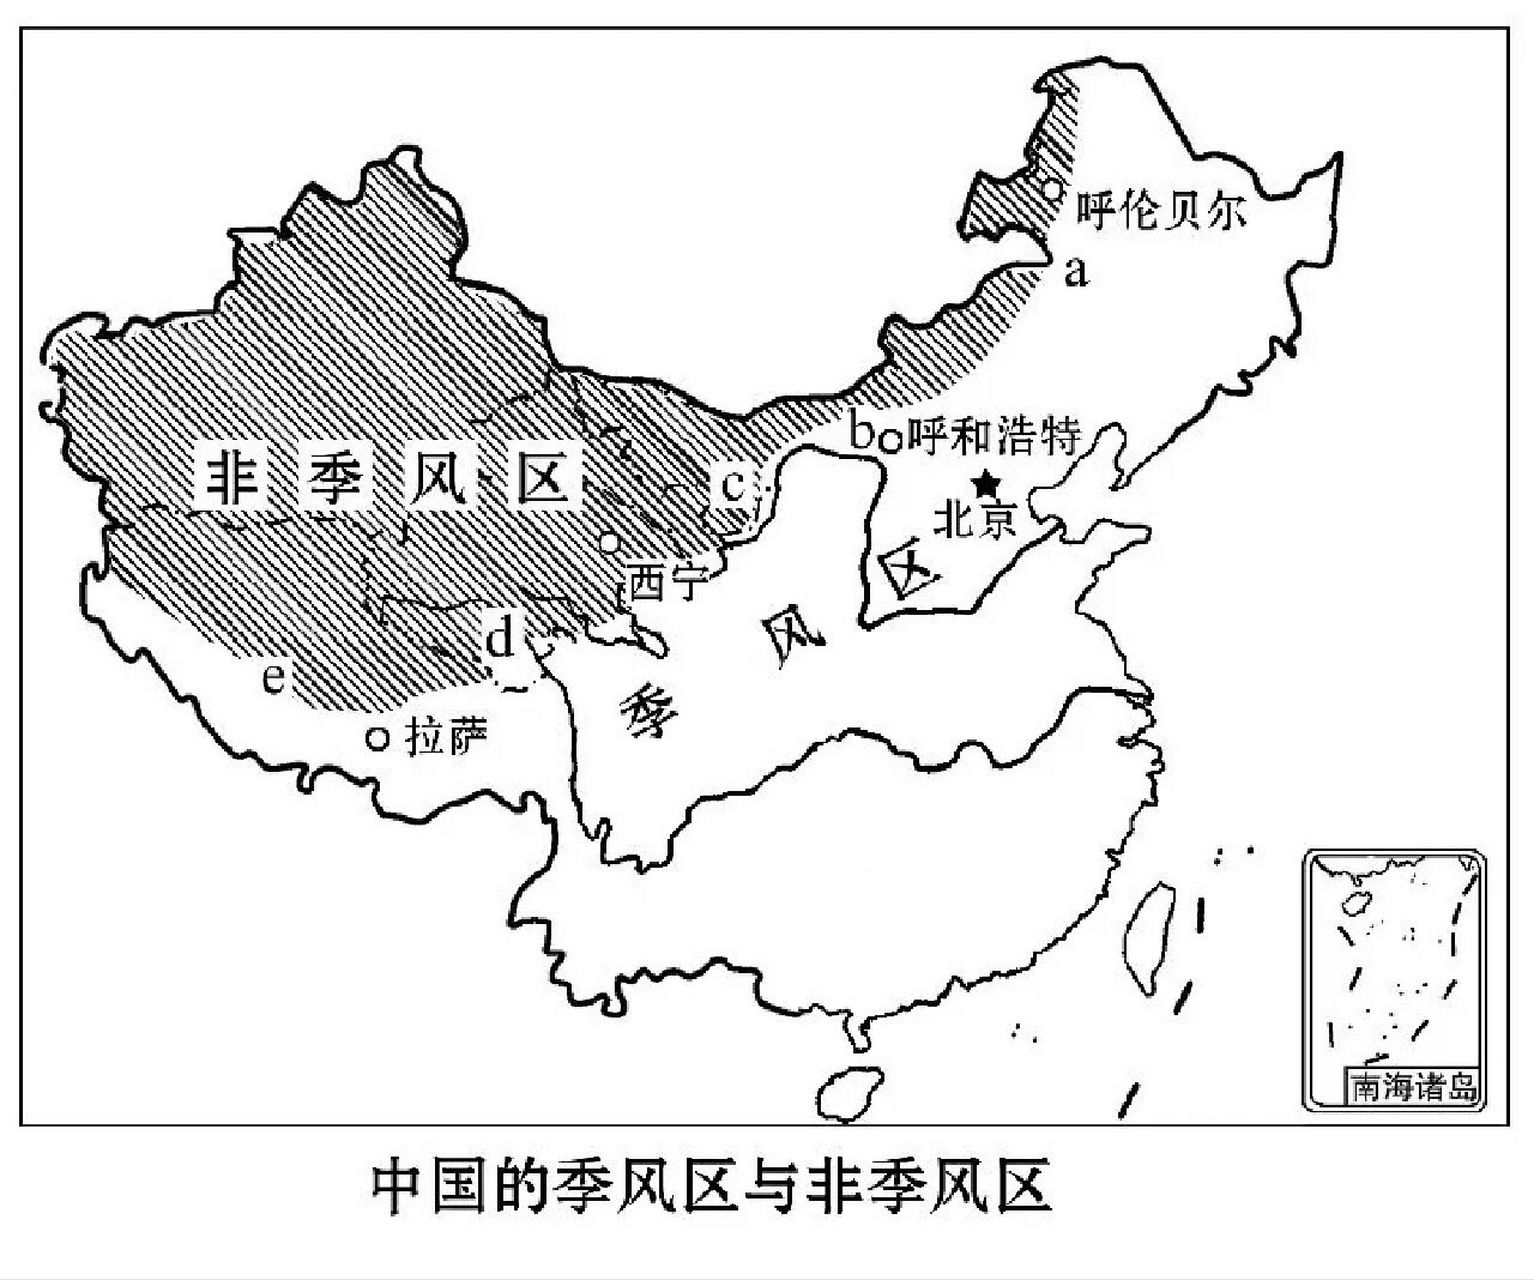 每日一填图,中国季风区与非季风区分界线